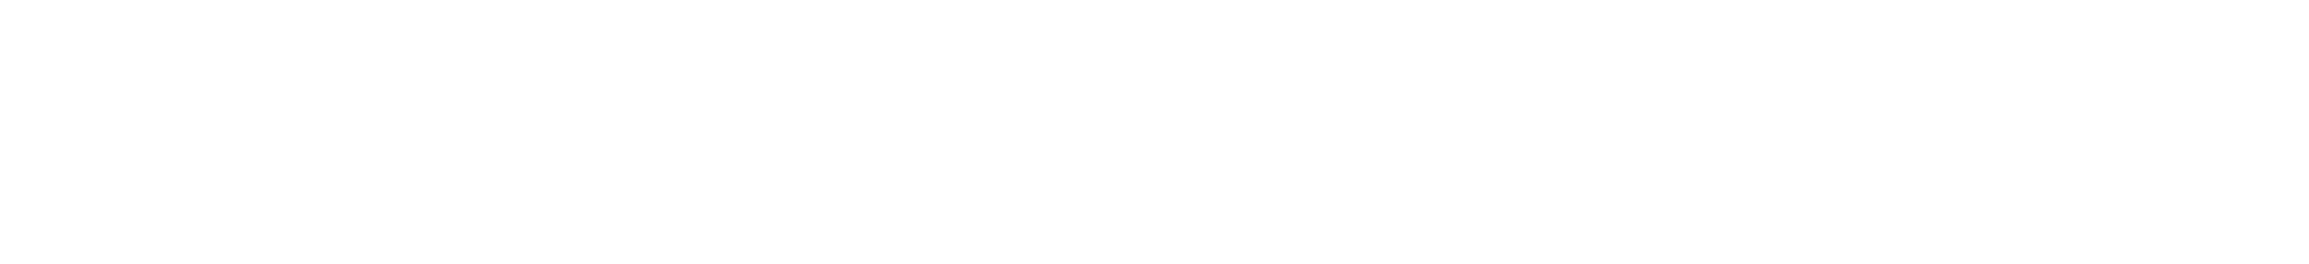 Unternehmer Journal Logo